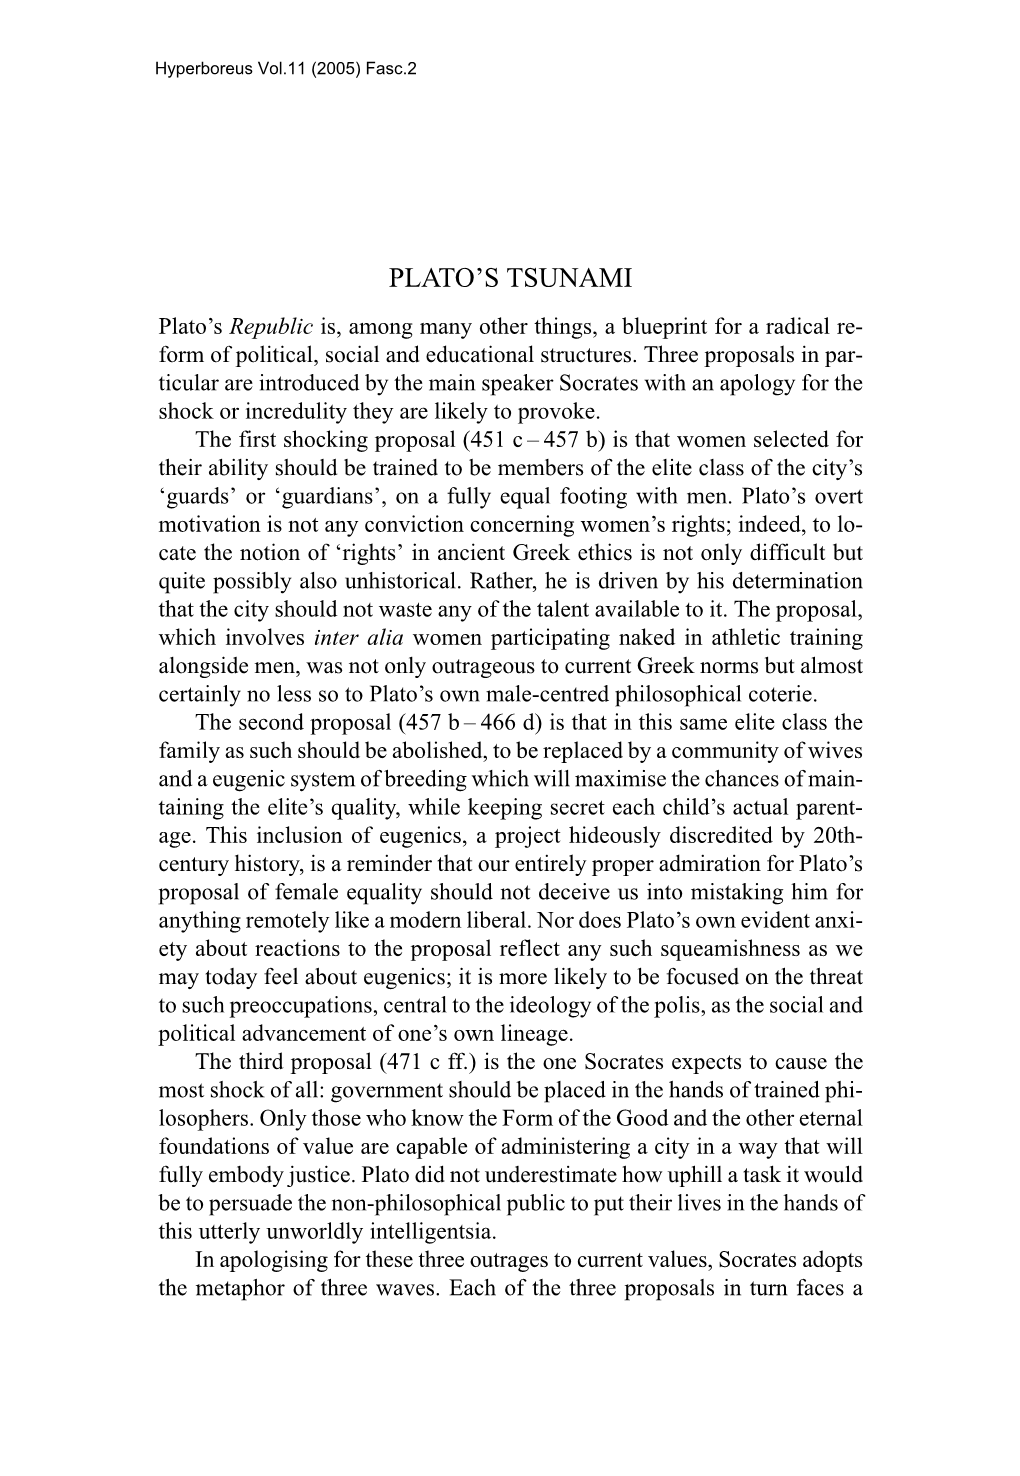 Plato's Tsunami